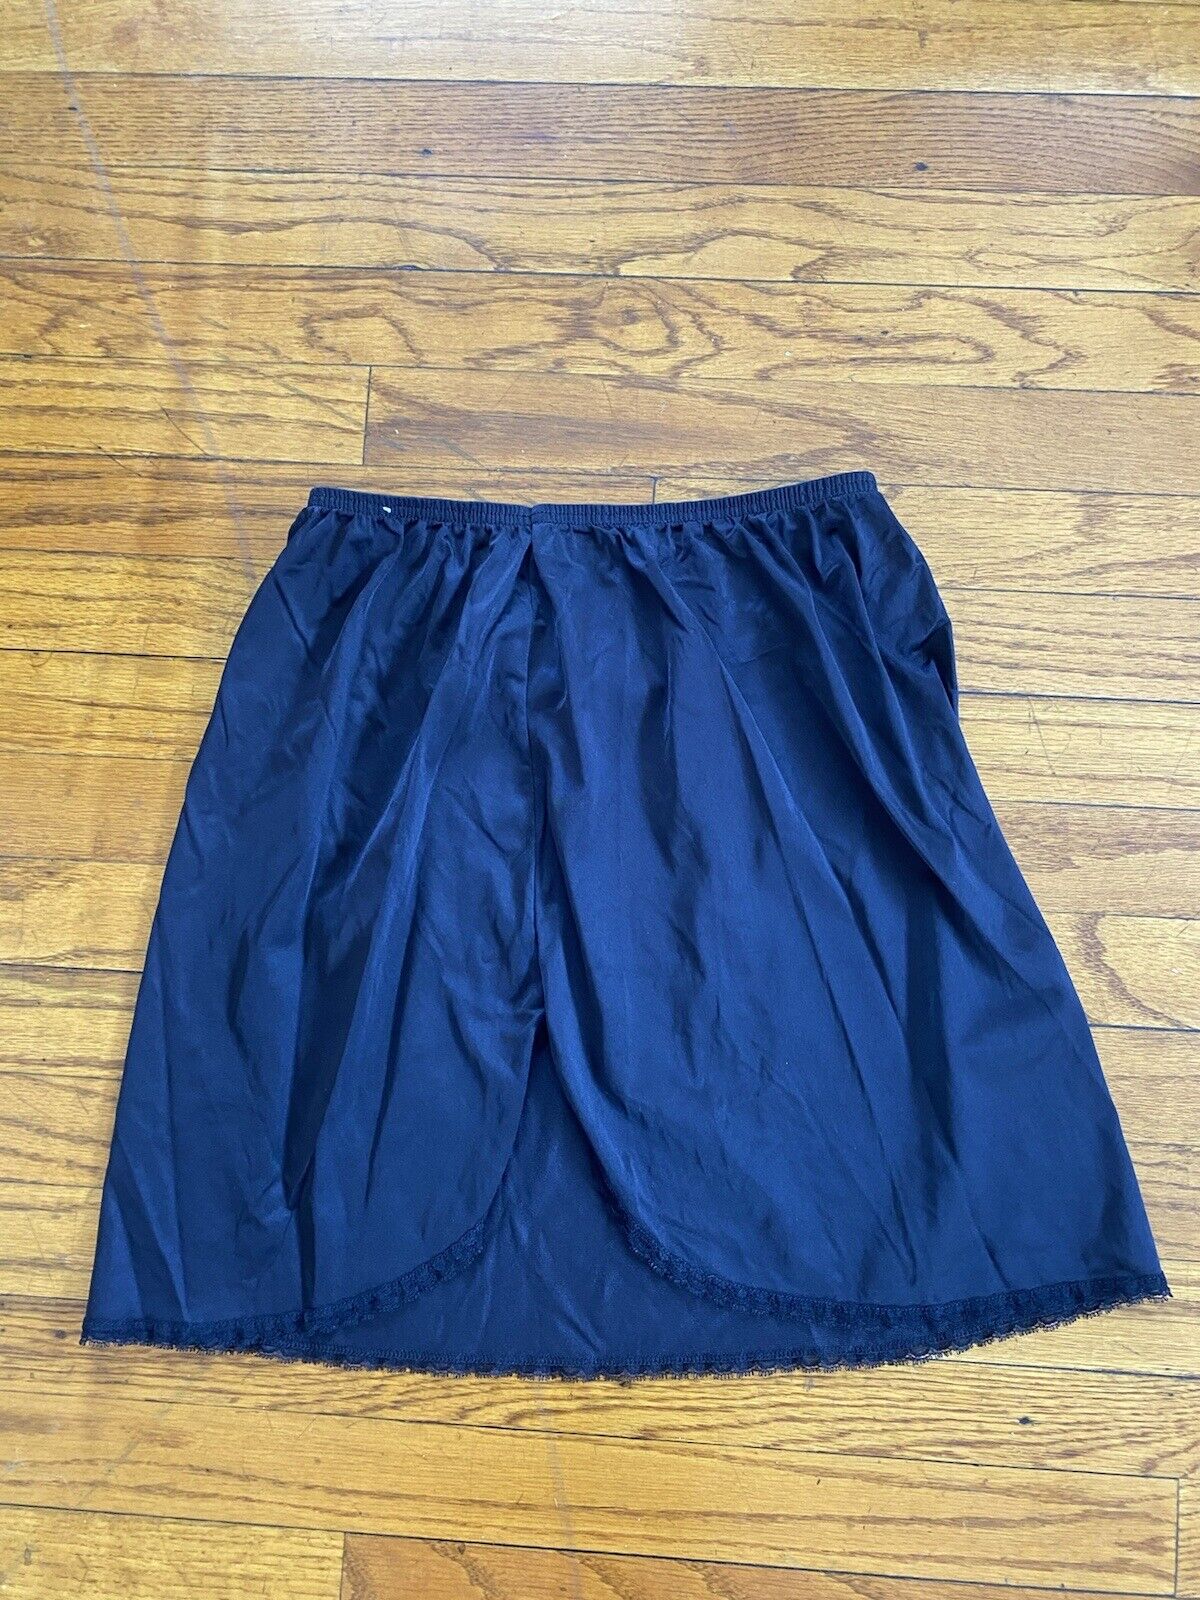 Vintage Black Slip Skirt - Vanity Fair - Women’s Small